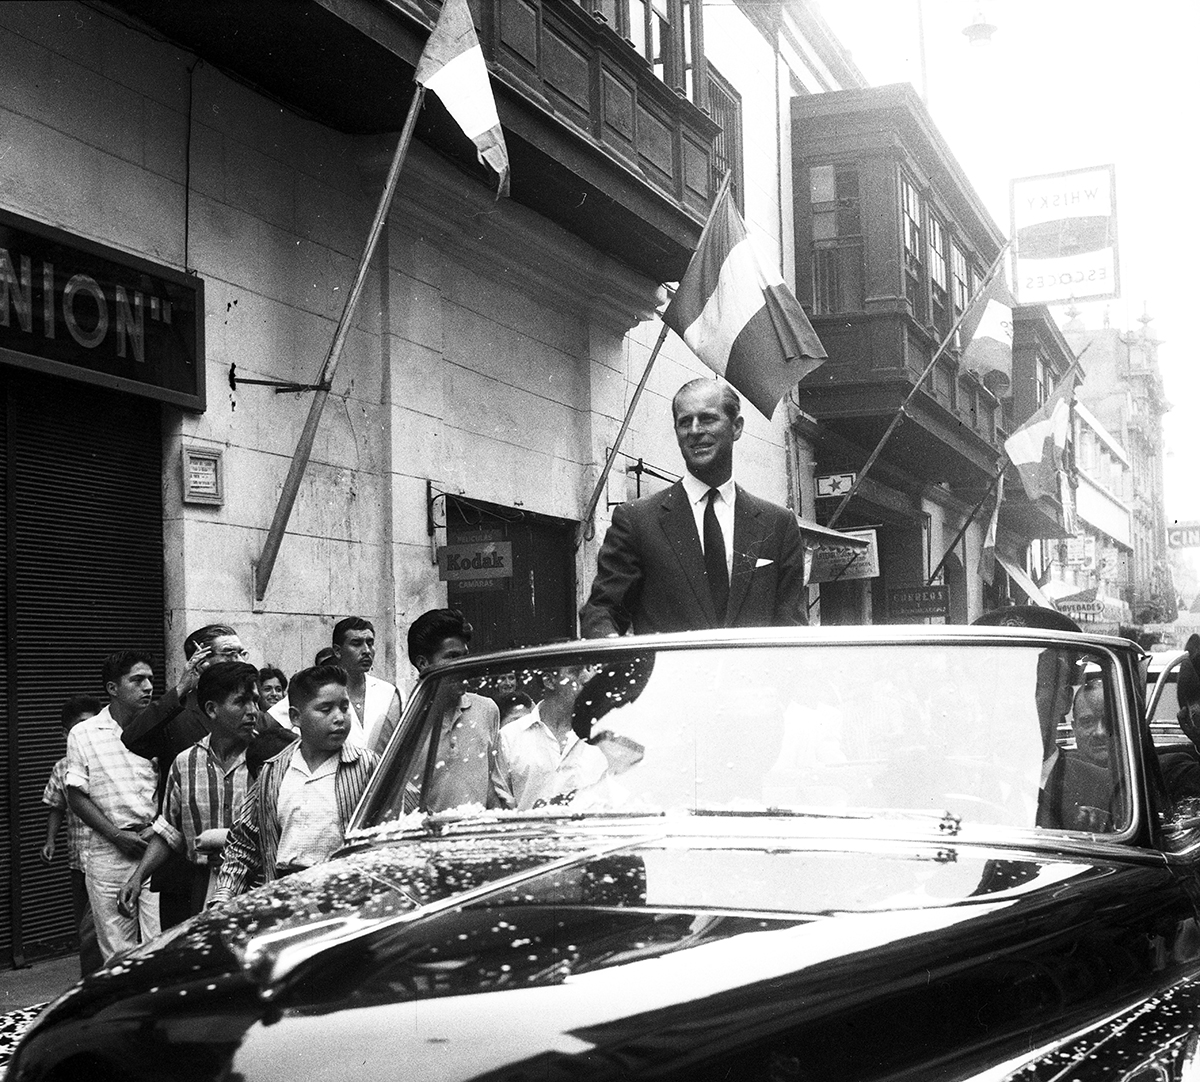 Lima, 21 de febrero de 1962. 

El príncipe Felipe recorre en auto descapotado el histórico Jirón de la Unión, en el centro de Lima, rumbo a Palacio de Gobierno, donde lo esperaba el presidente peruano Manuel Prado. (Foto: GEC Archivo Histórico)